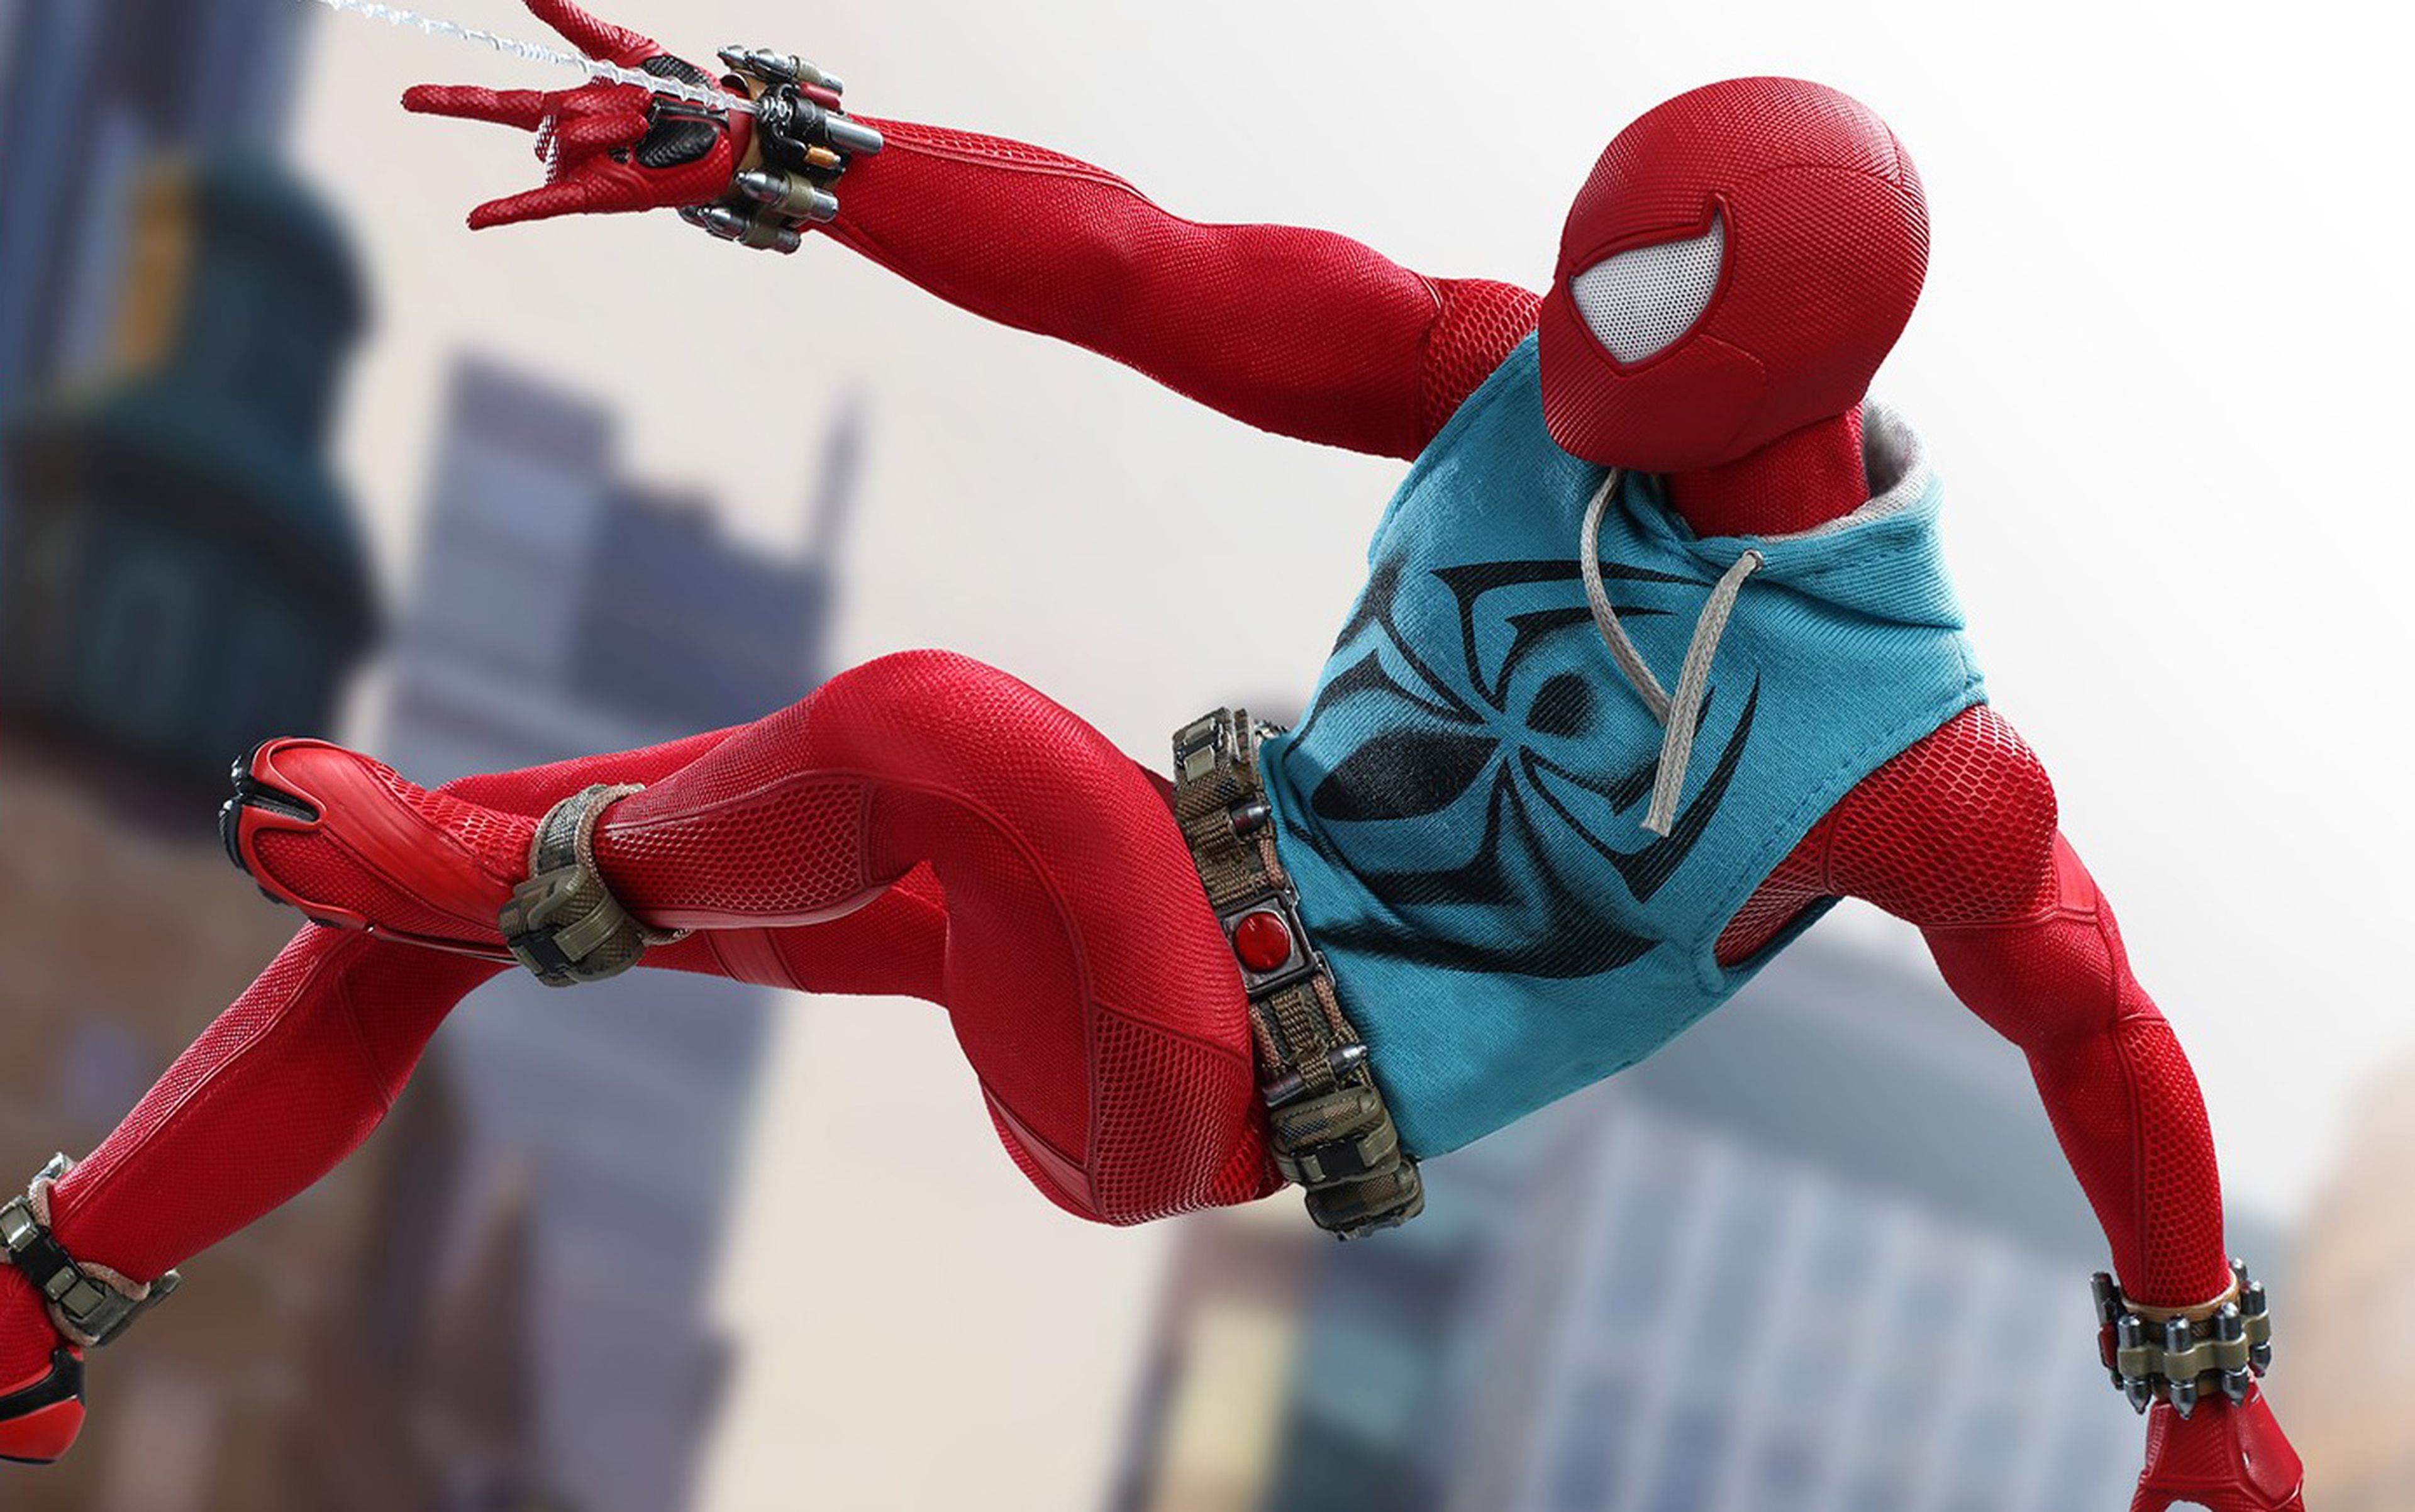 Spider-Man La espectacular figura Hot Toys de la Escarlata | Hobby Consolas